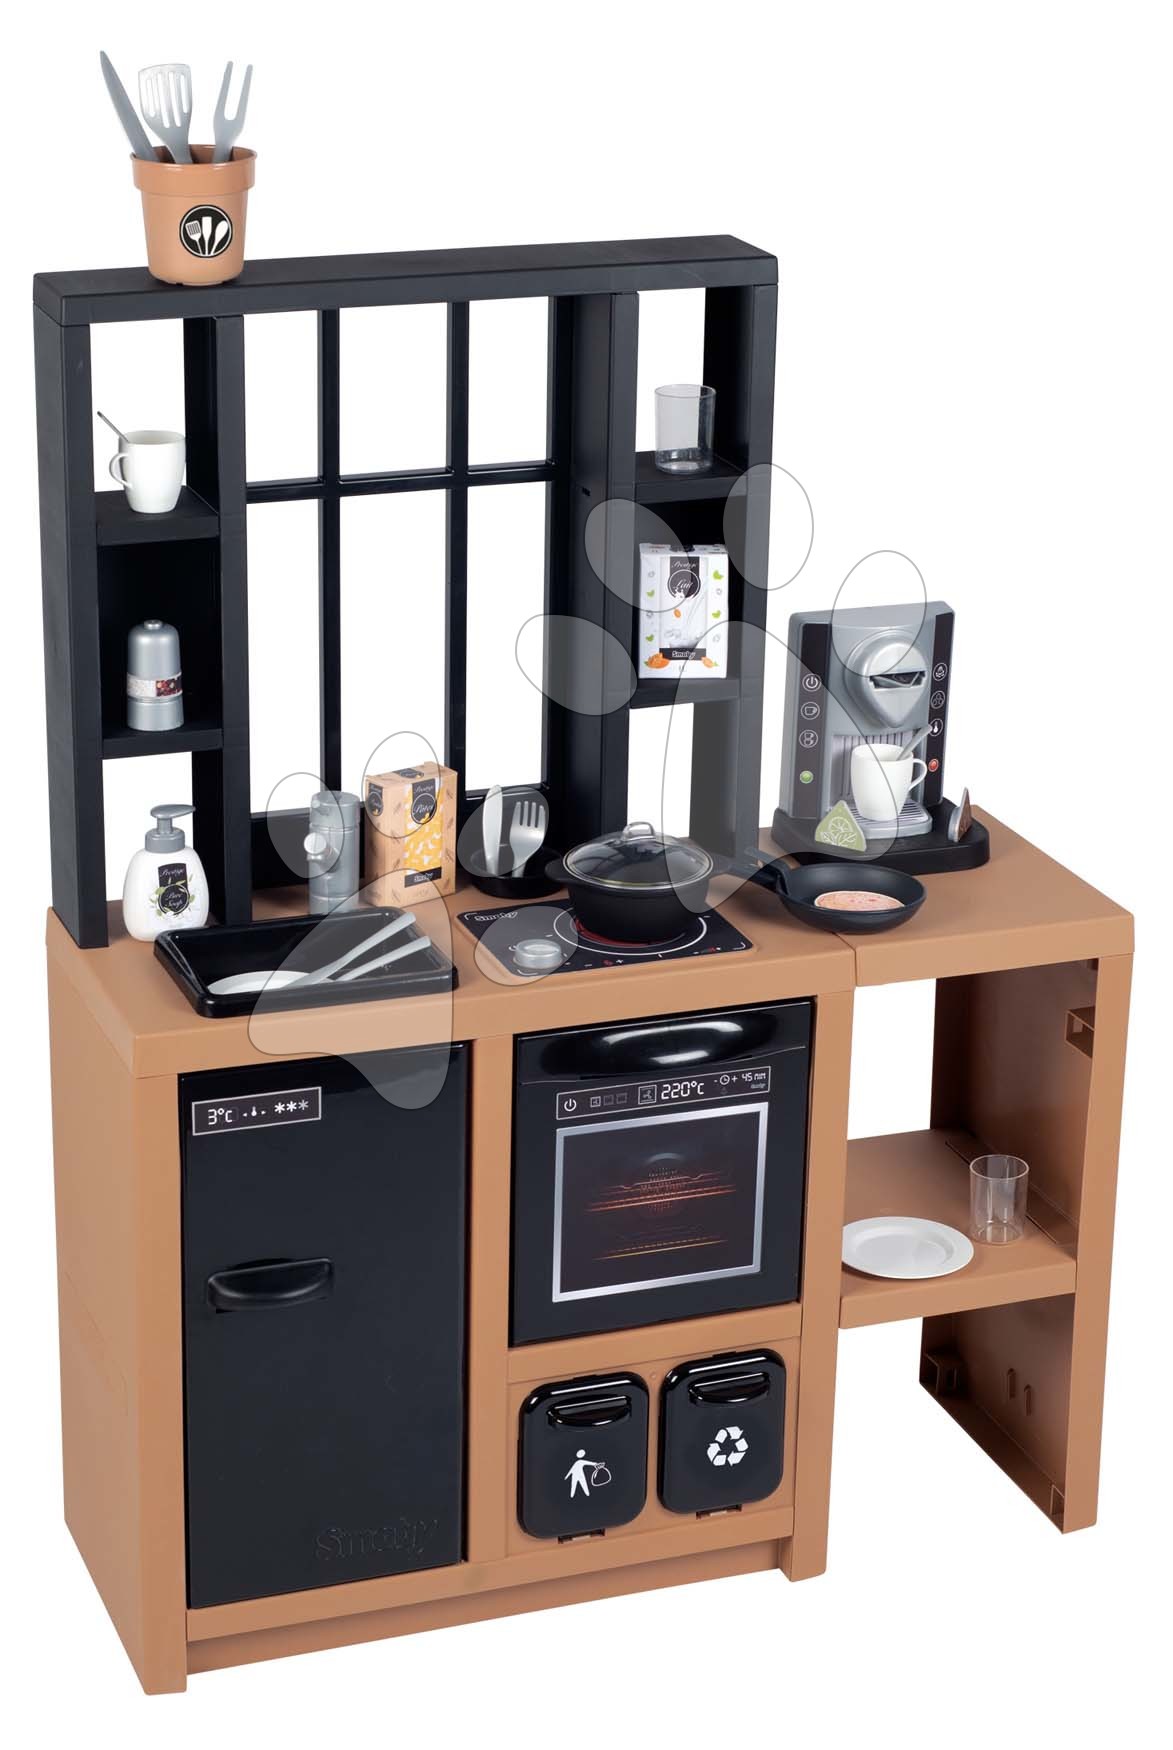 Egyszerű játékkonyhák - Modern játékkonyha Loft Industrial Kitchen Smoby kávéfőzővel működő készülékekkel és 32 kiegészítővel 50 cm munkafelület